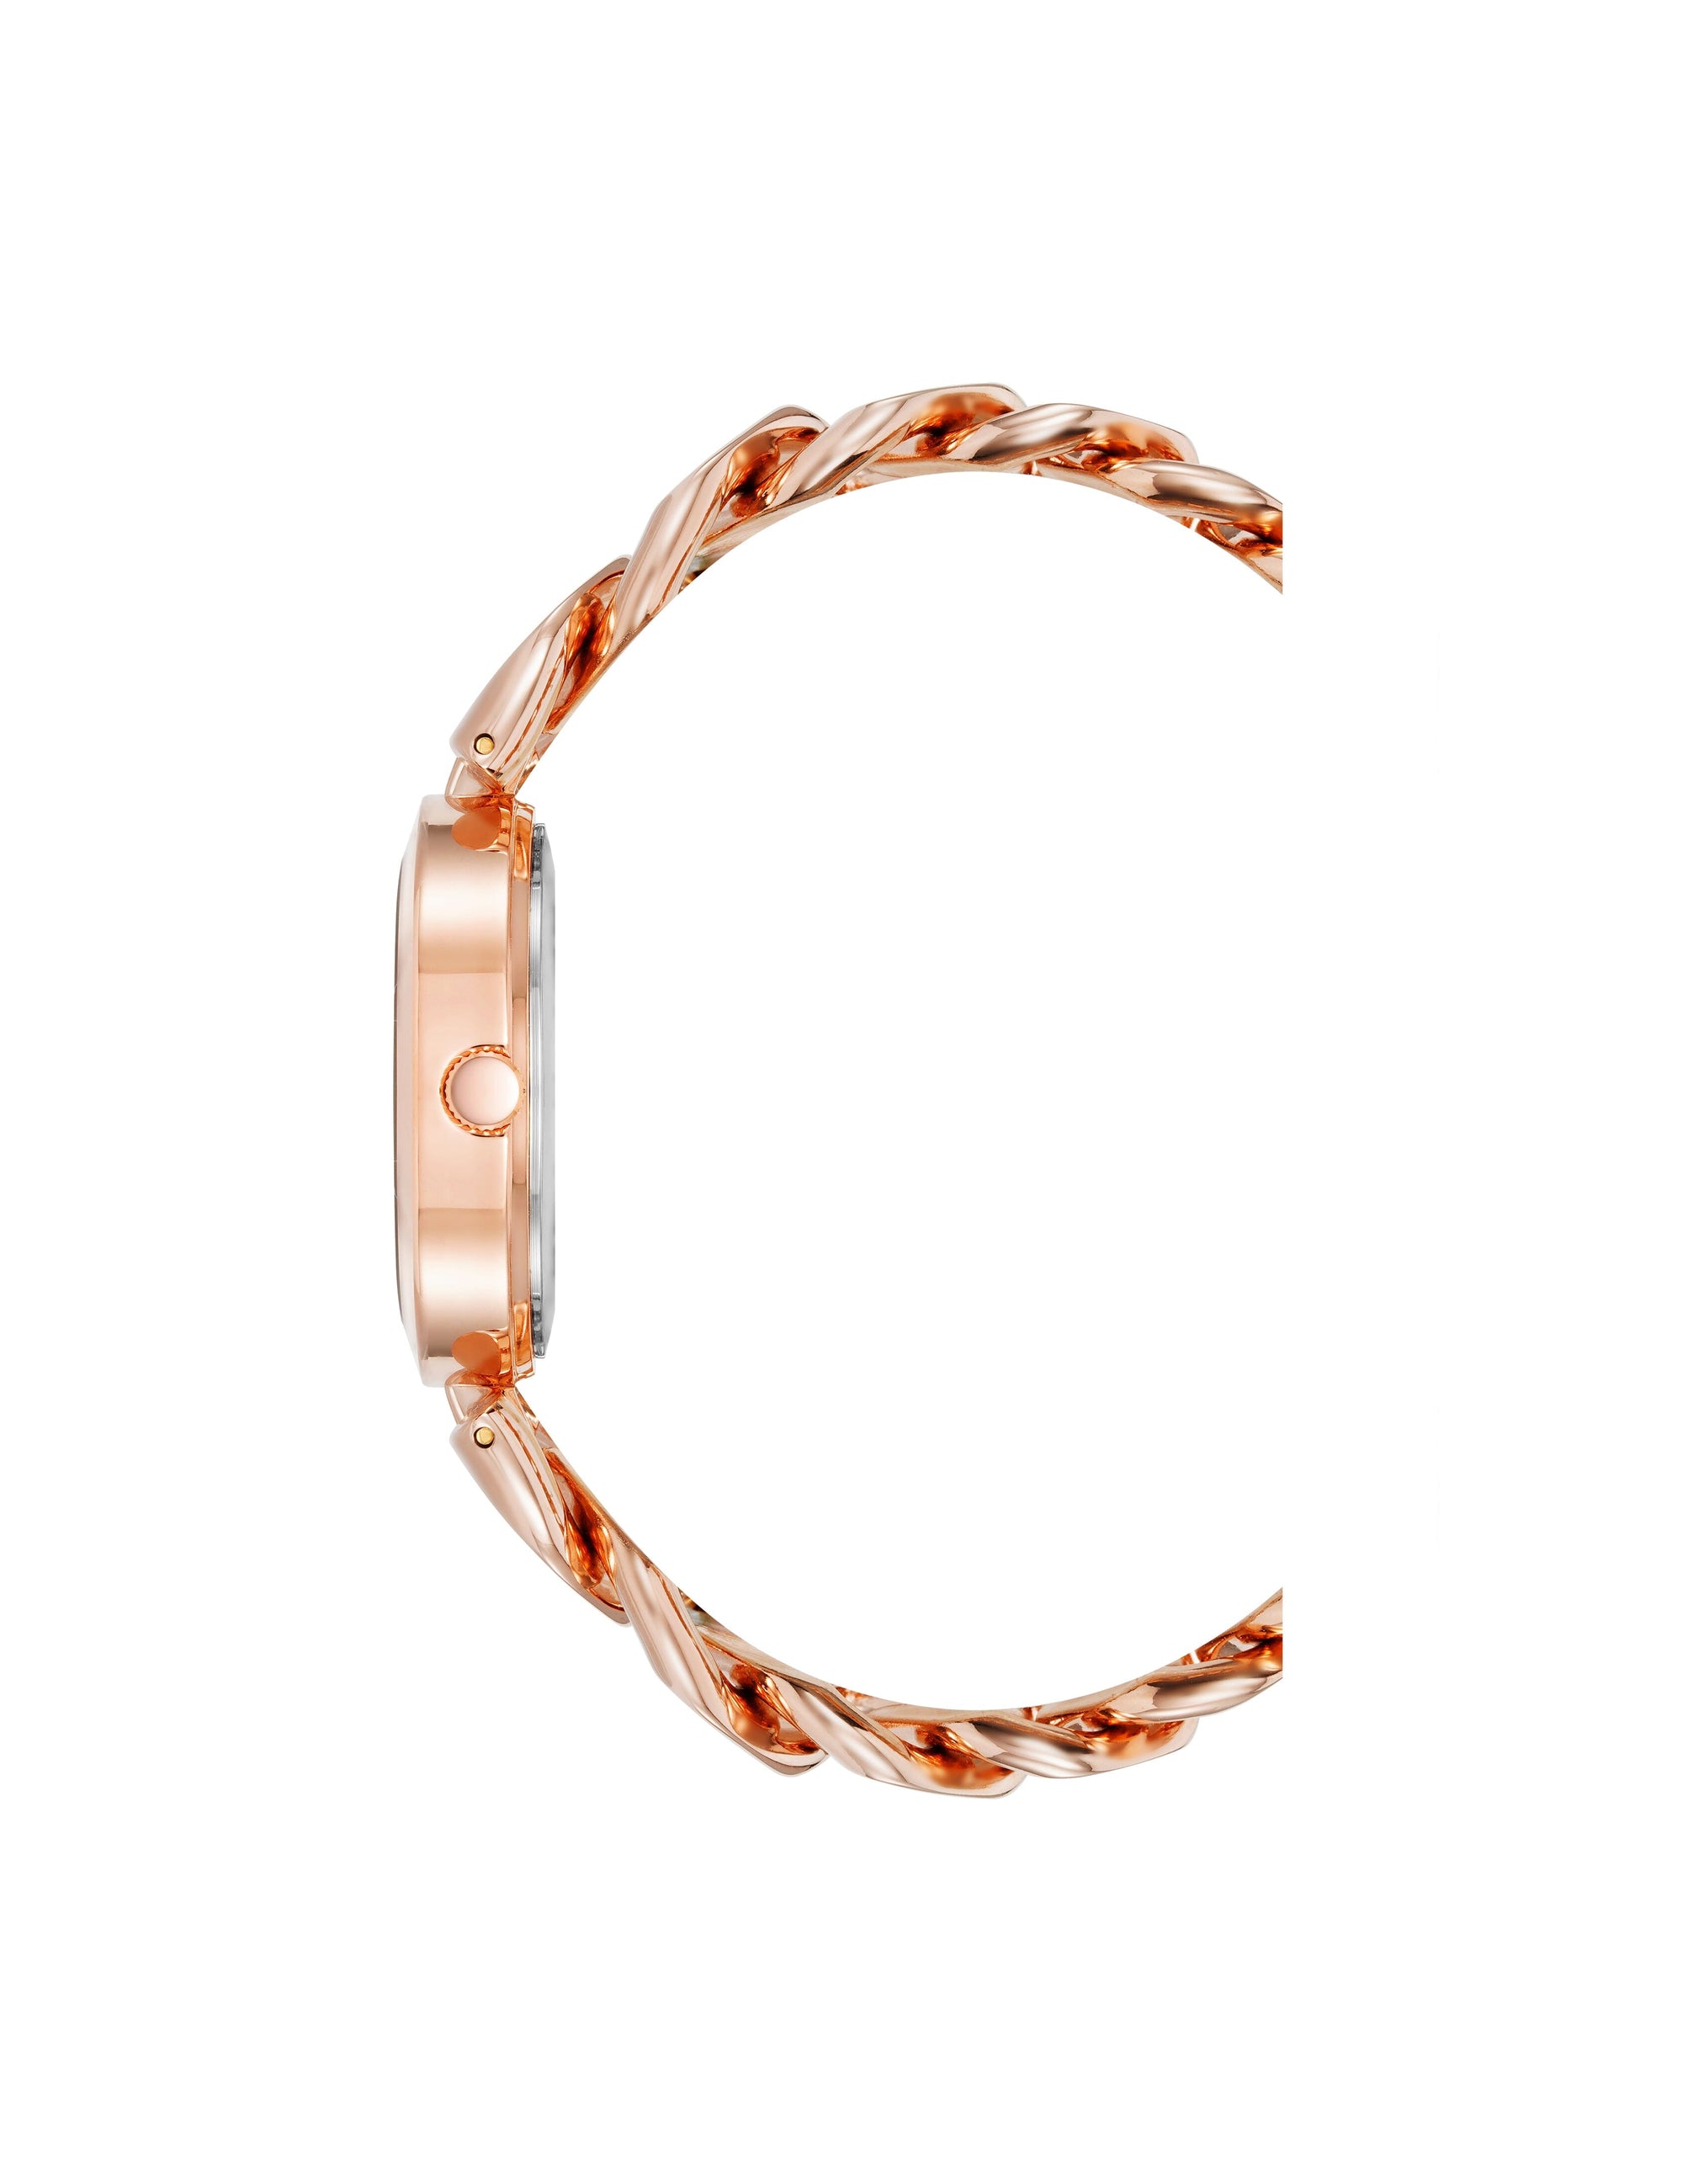 Anne Klein Rose Gold-Tone/ Navy Diamond Accented Round Case Bracelet Watch